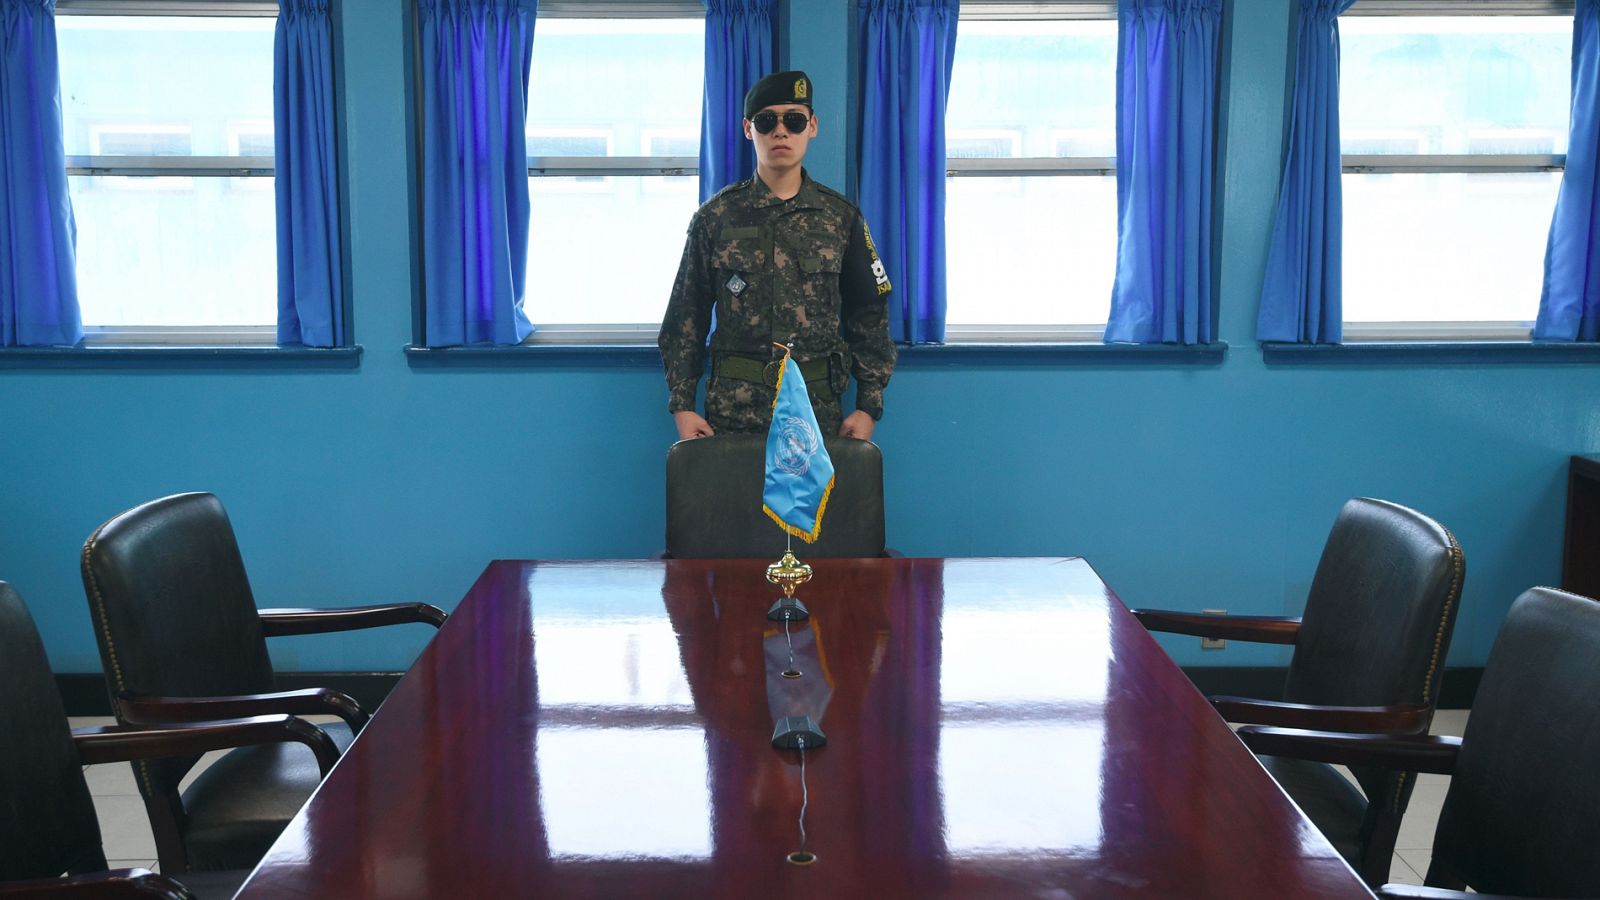 Un soldado surcoreano monta guardia en la sala de reuniones del Armisticio en la frontera entre las dos Coreas